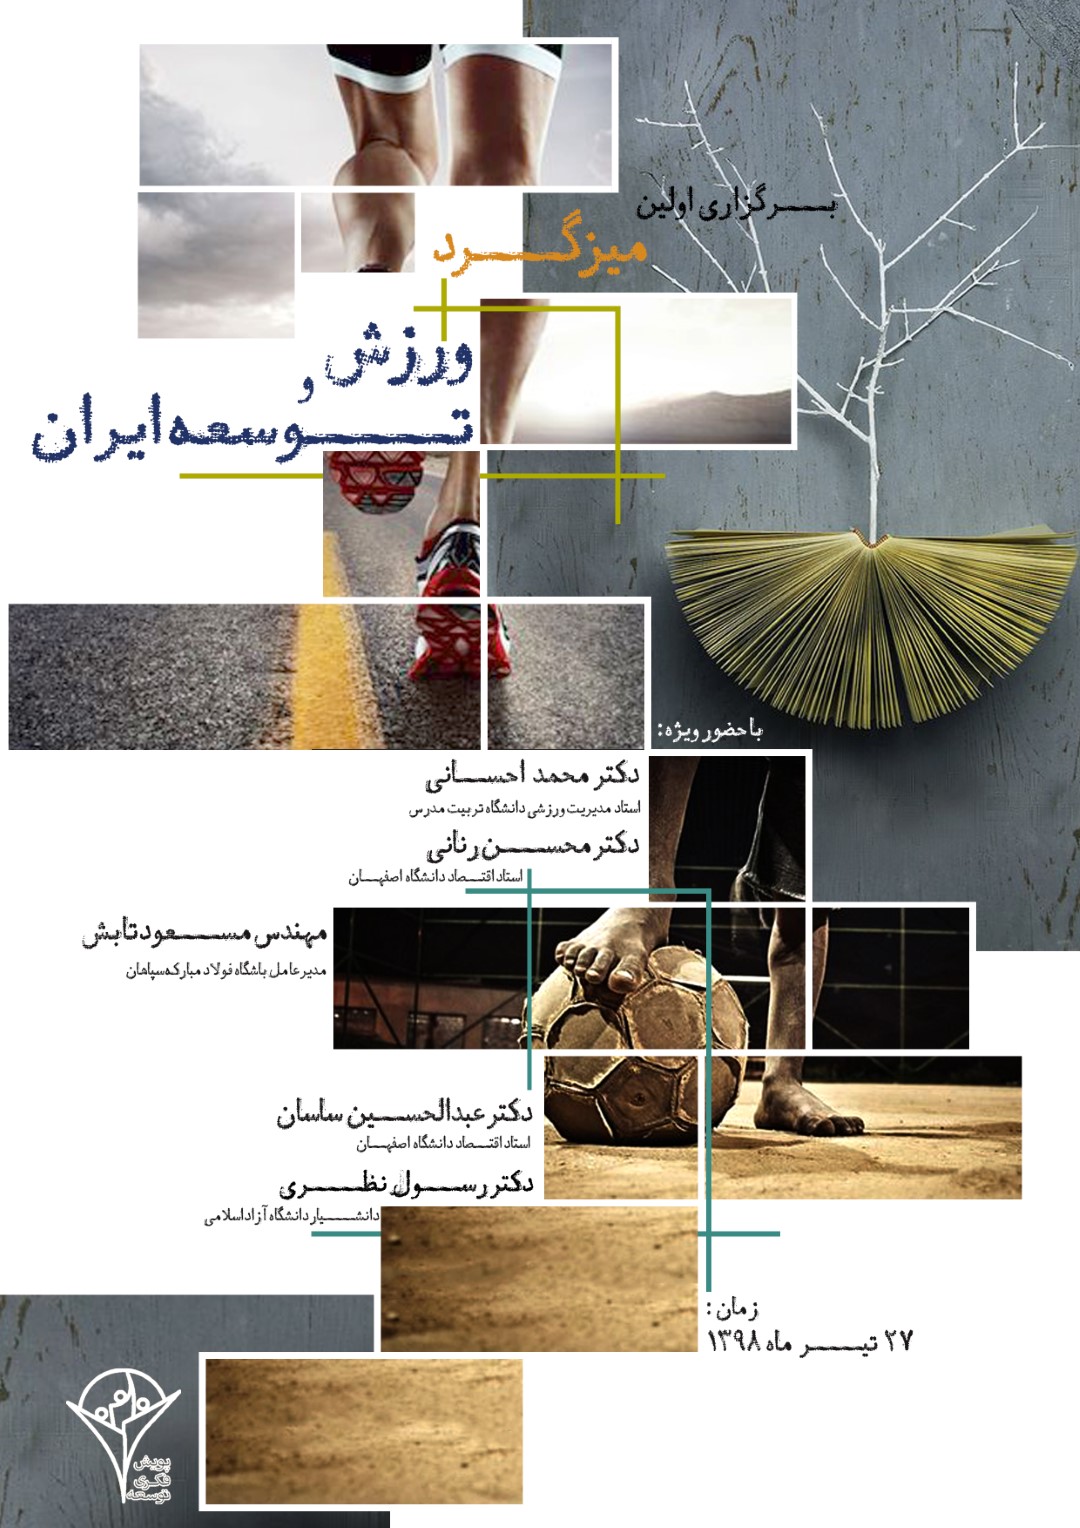 پوستر میزگرد ورزش و توسعه ایران